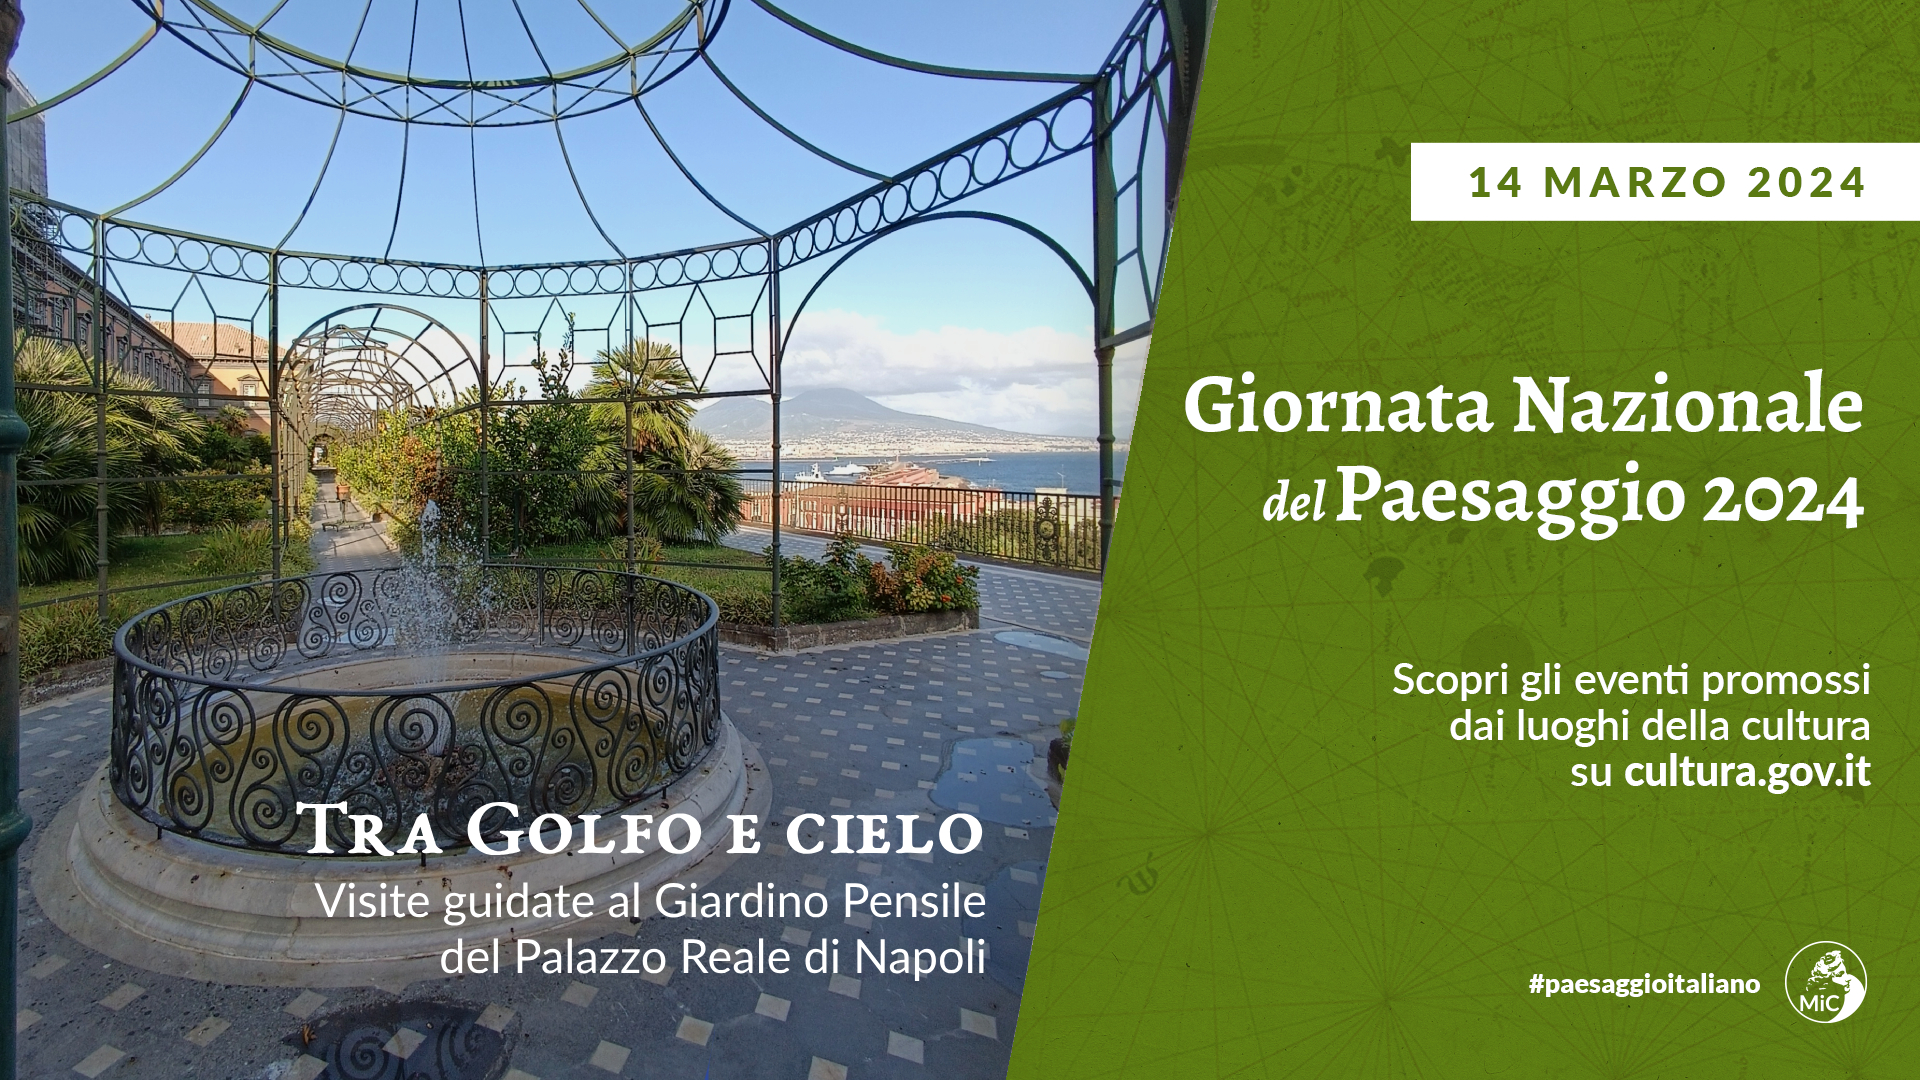 Tra Golfo e cielo- Visite guidate al Giardino Pensile del Palazzo Reale di Napoli in occasione della Giornata nazionale del Paesaggio 2024